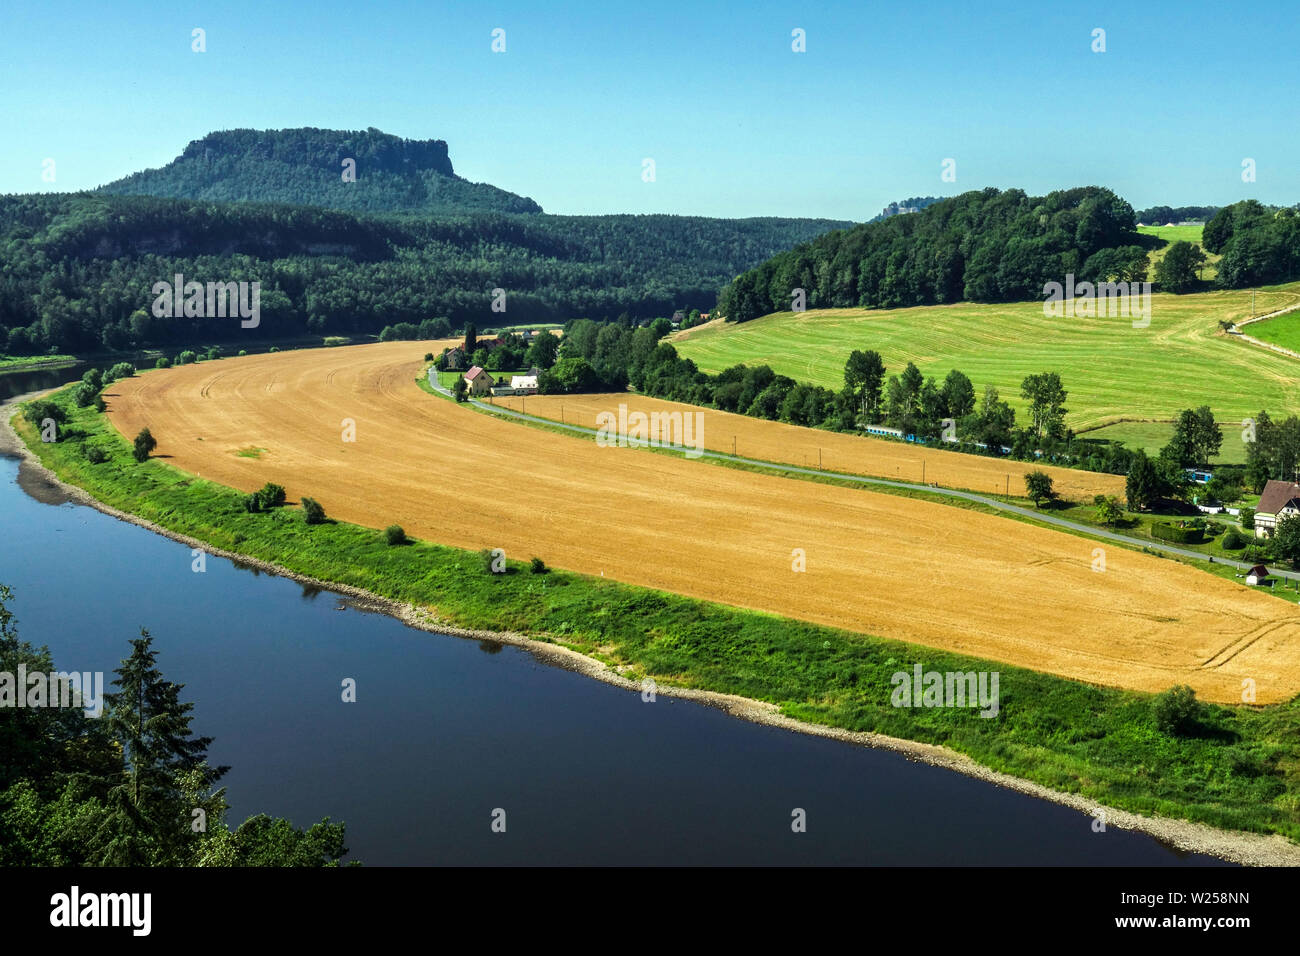 Parc national de la Suisse saxonne, montagne Lilienstein au-dessus de la vallée de l'Elbe rivière Allemagne Paysage Banque D'Images